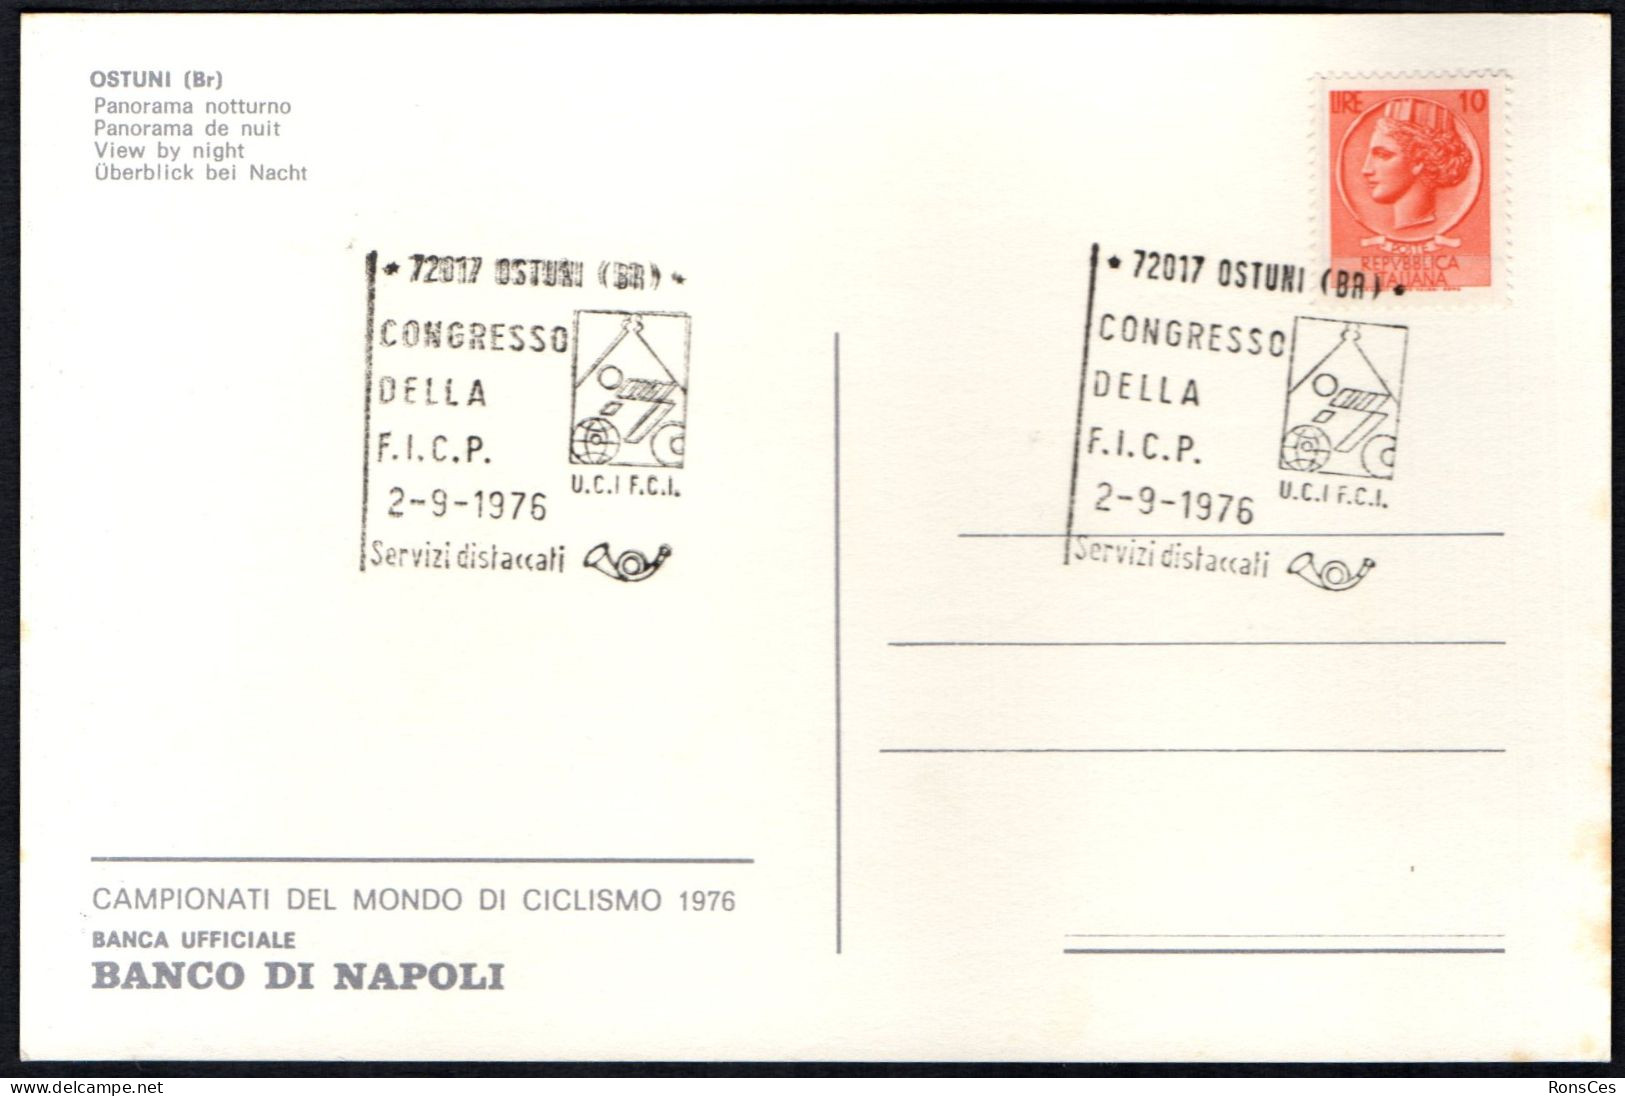 CYCLING - ITALIA OSTUNI (BR) 1976 - CONGRESSO DELLA F.I.C.P. - CARTOLINA UFFICIALE - A - Cyclisme